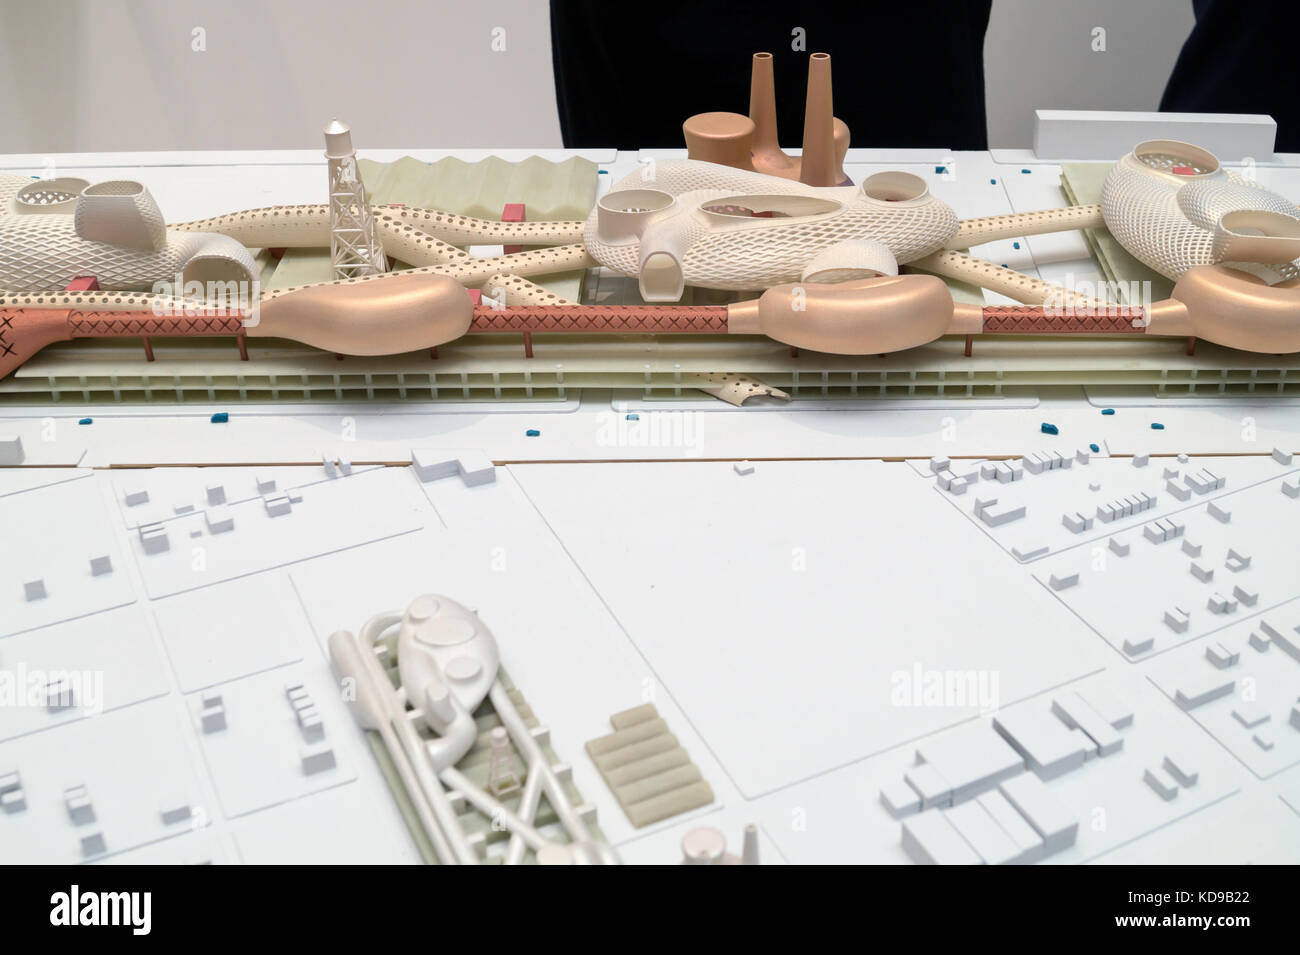 Greg Lynn, Projekt für Detroits Packard Plant, Modell, 12 Vorschläge zur Erneuerung des Detroit - Pavillon der Vereinigten Staaten - Architekturbiennale Venedig 2016 Stockfoto